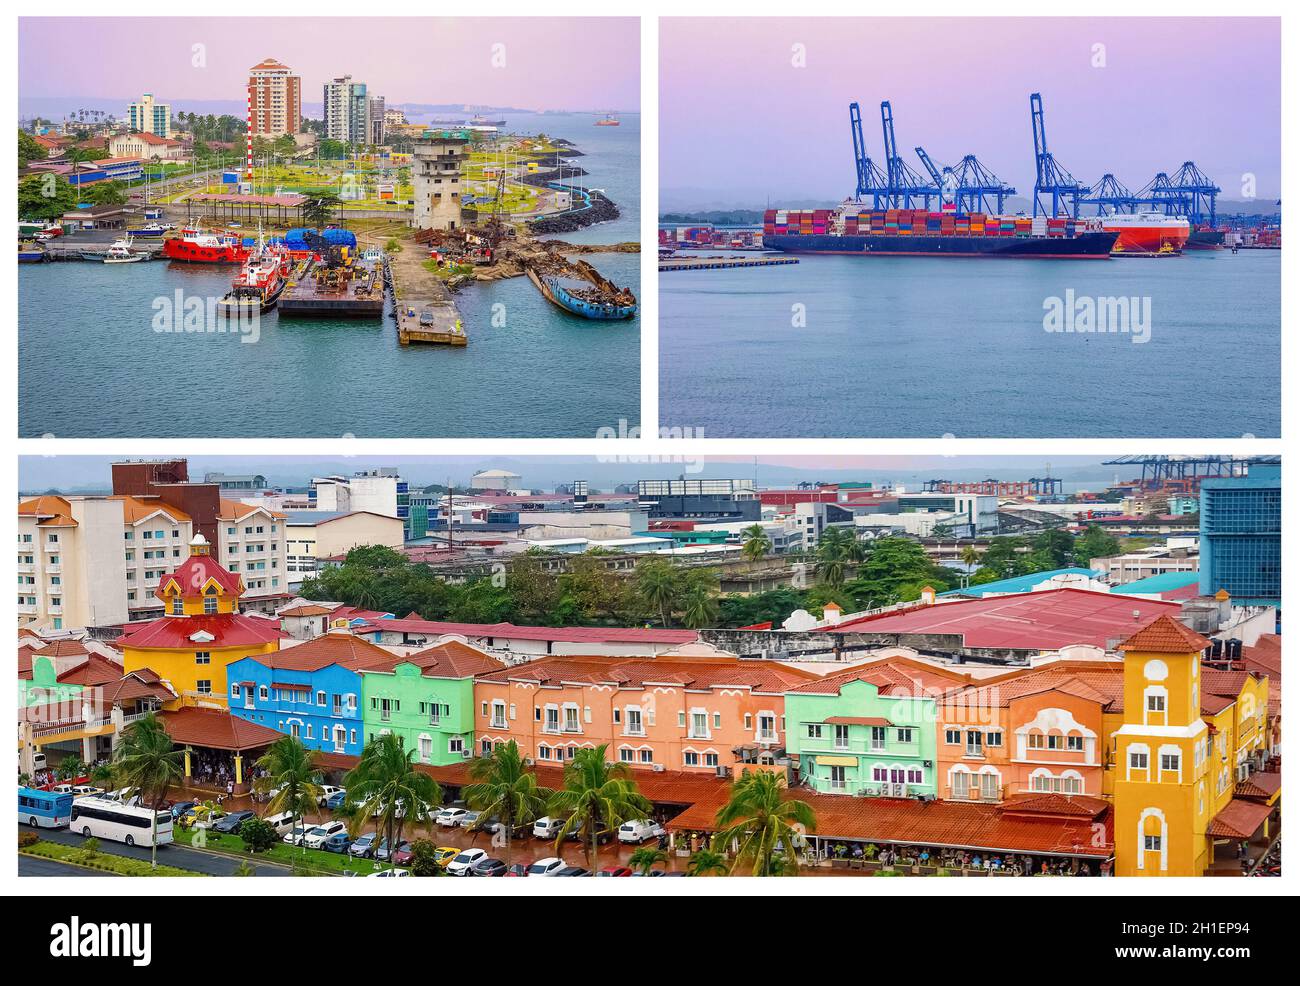 Colon ist ein Seehafen an der Karibikküste von Panama. Die Stadt liegt in der Nähe des karibischen Meereingangs zum Panamakanal. Stockfoto